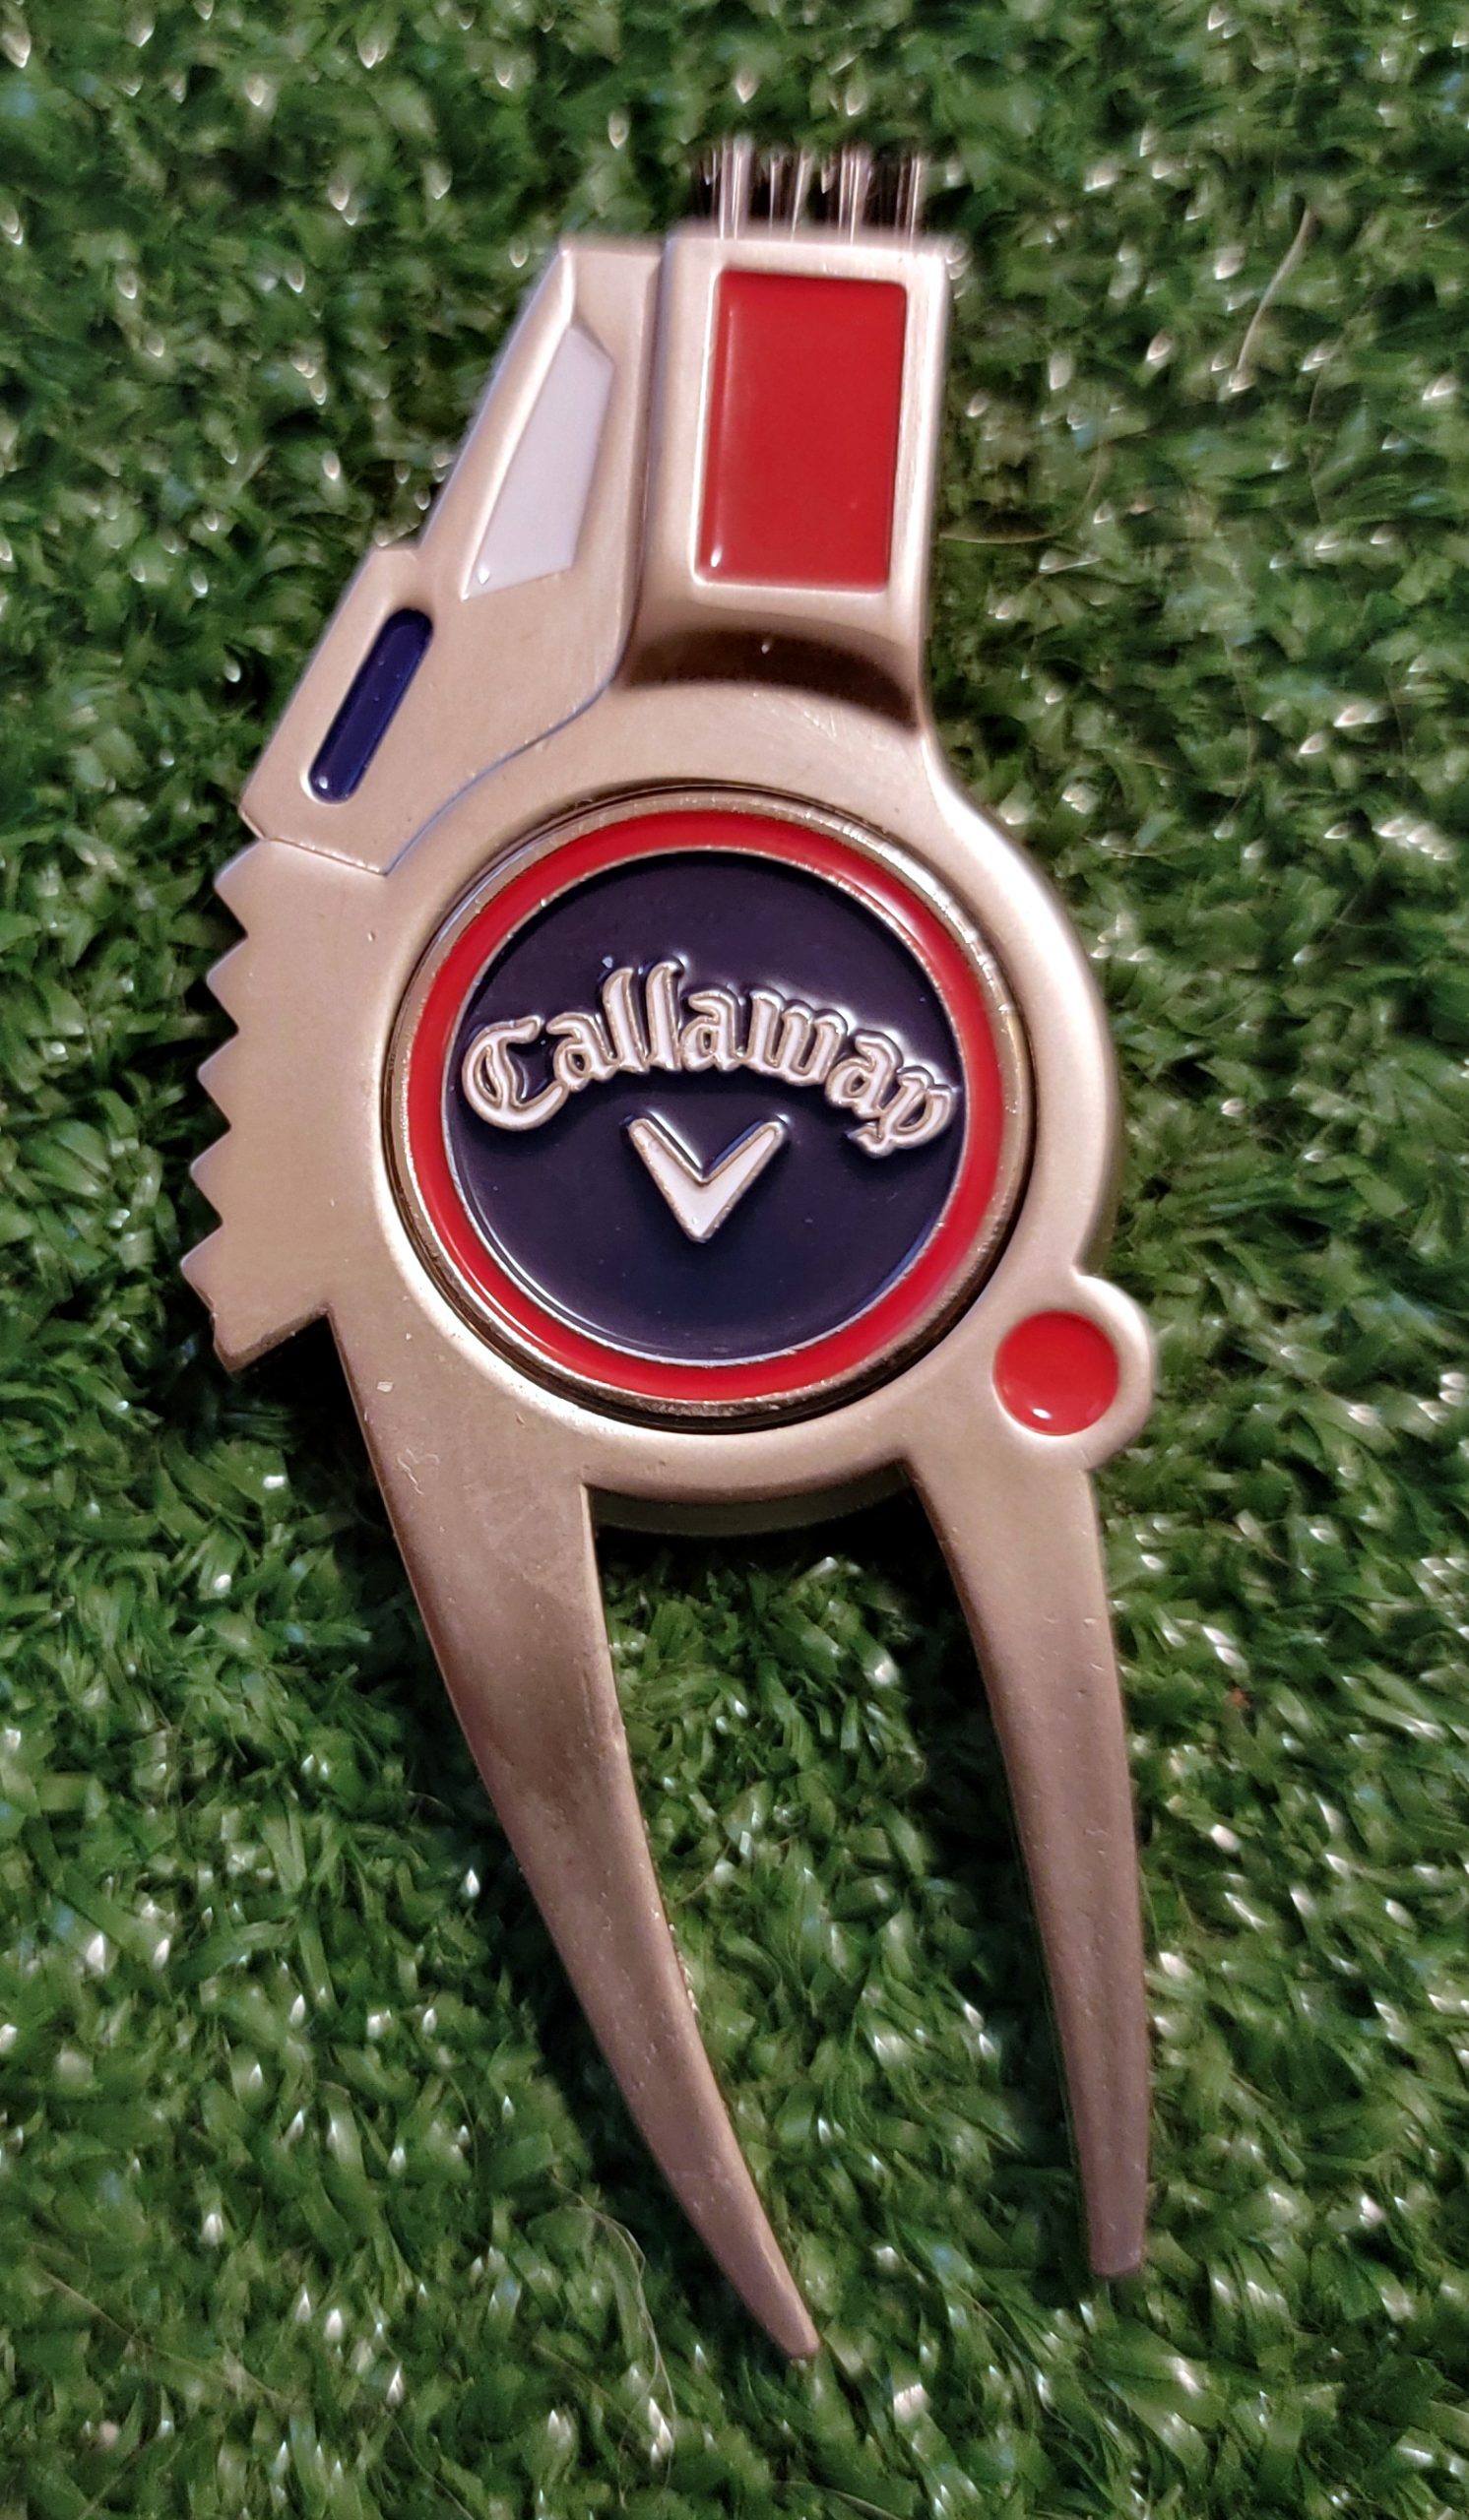 Old Duffer Golf image of a Callaway Divot / Ball Mark Tool